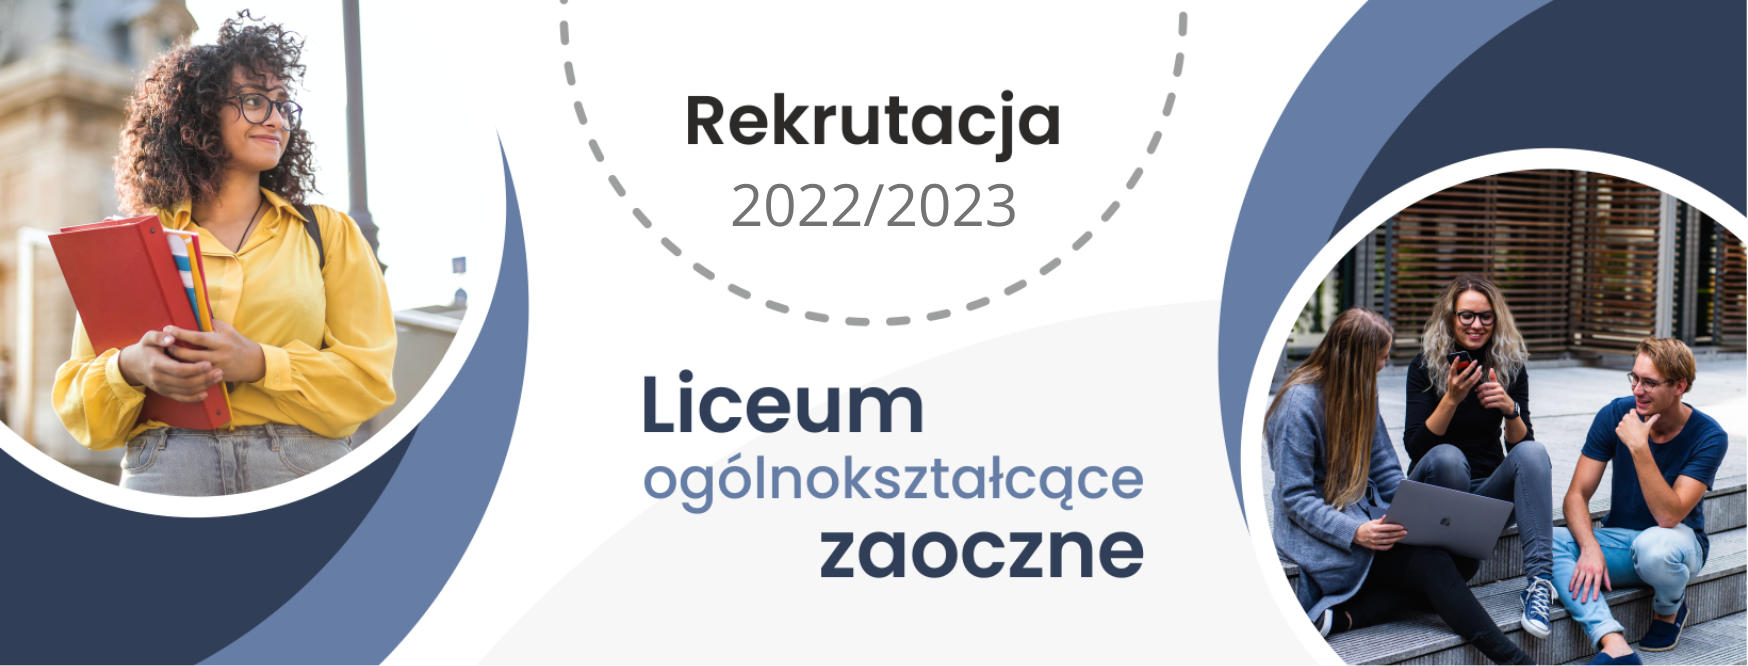 Rekrutacja ZDZ Olecko liceum zaoczne 20222023